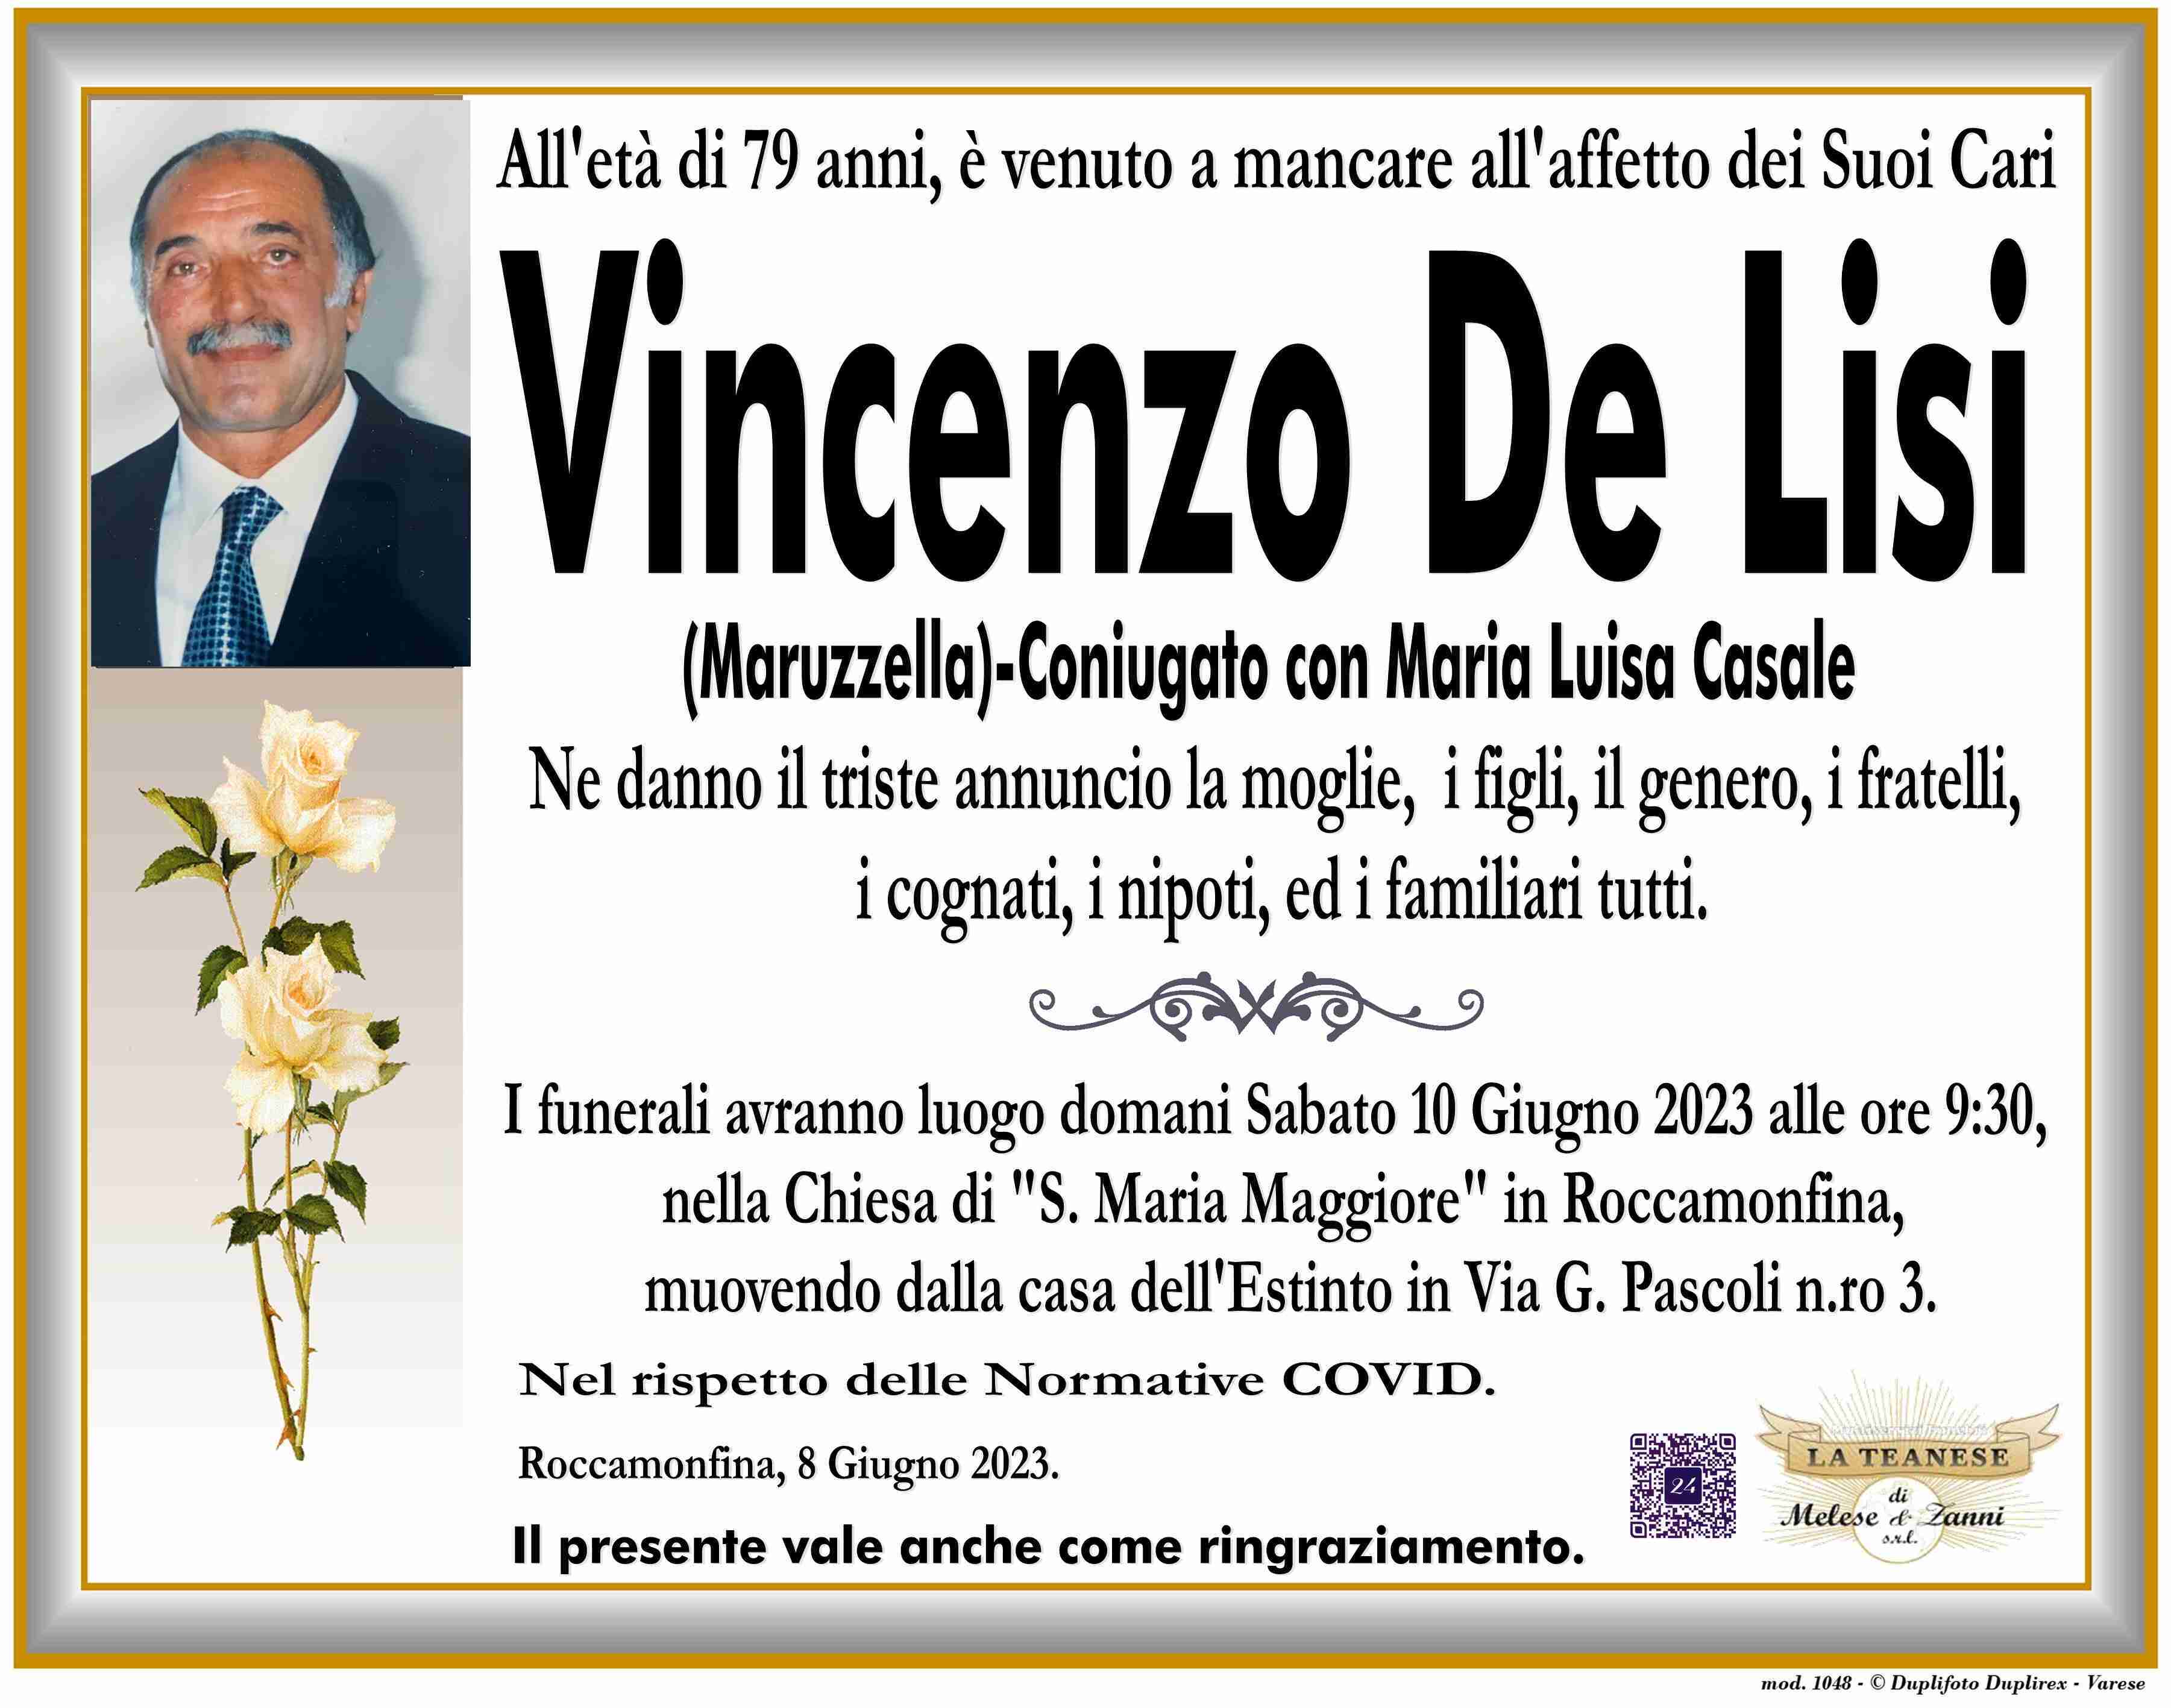 Vincenzo De Lisi